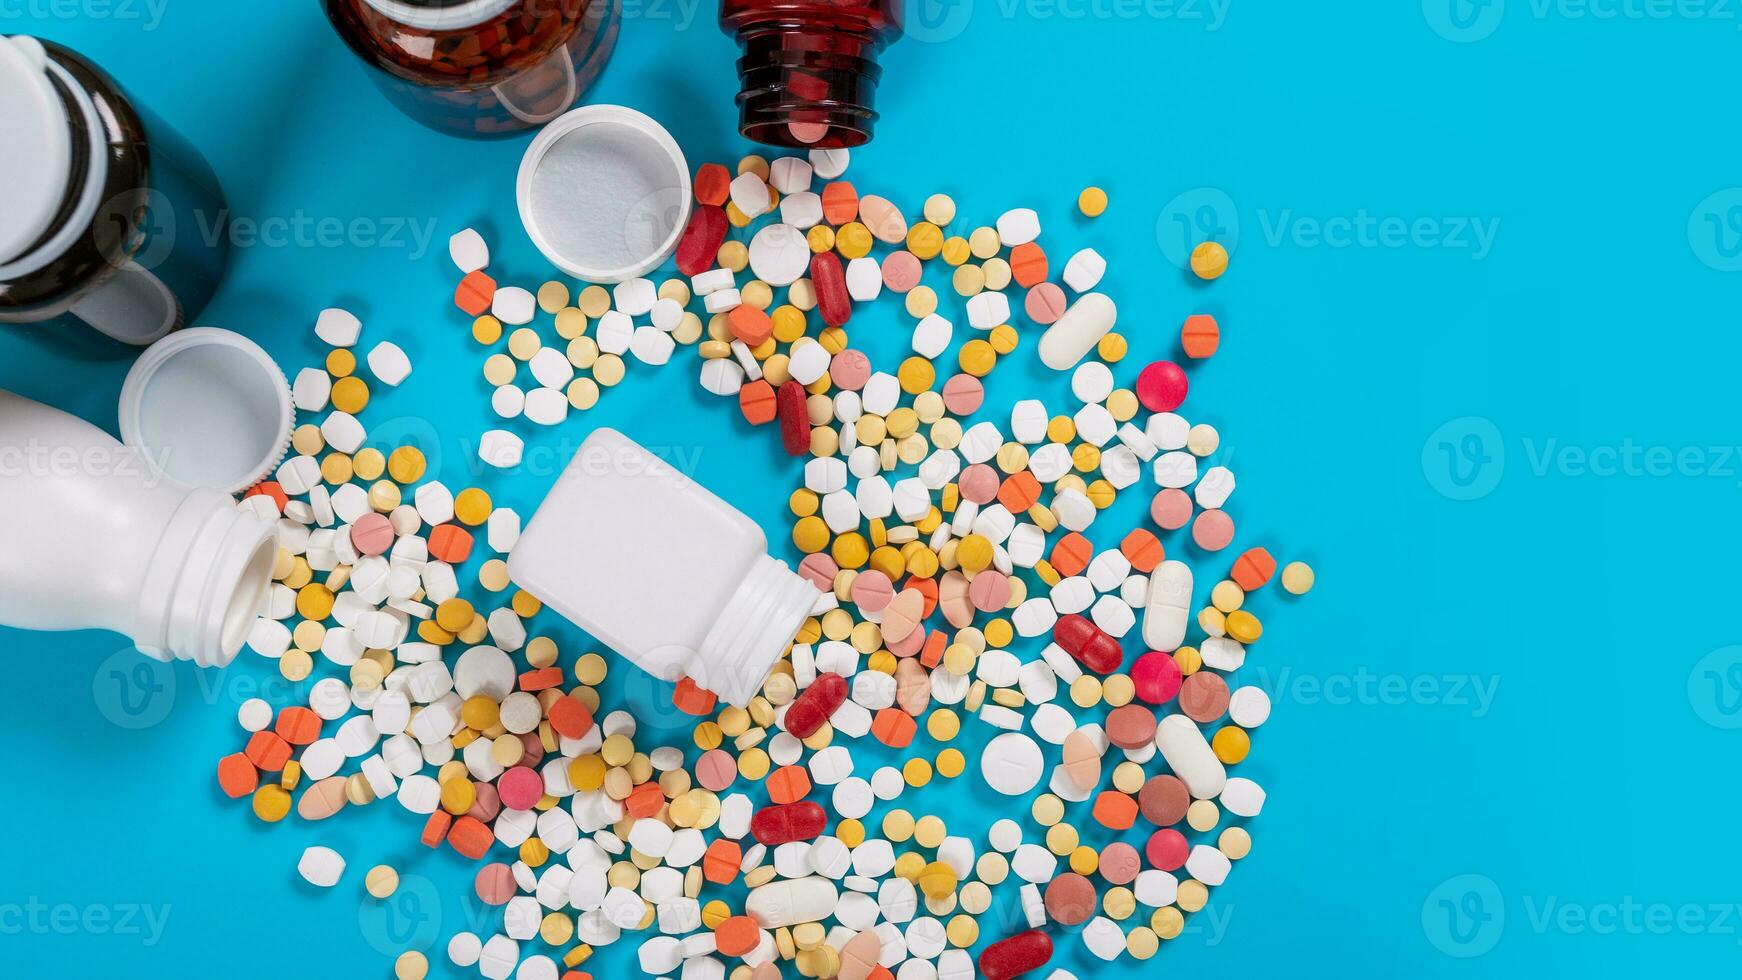 medicinsk piller och tabletter spill ut av en läkemedel flaska på blå bakgrund foto